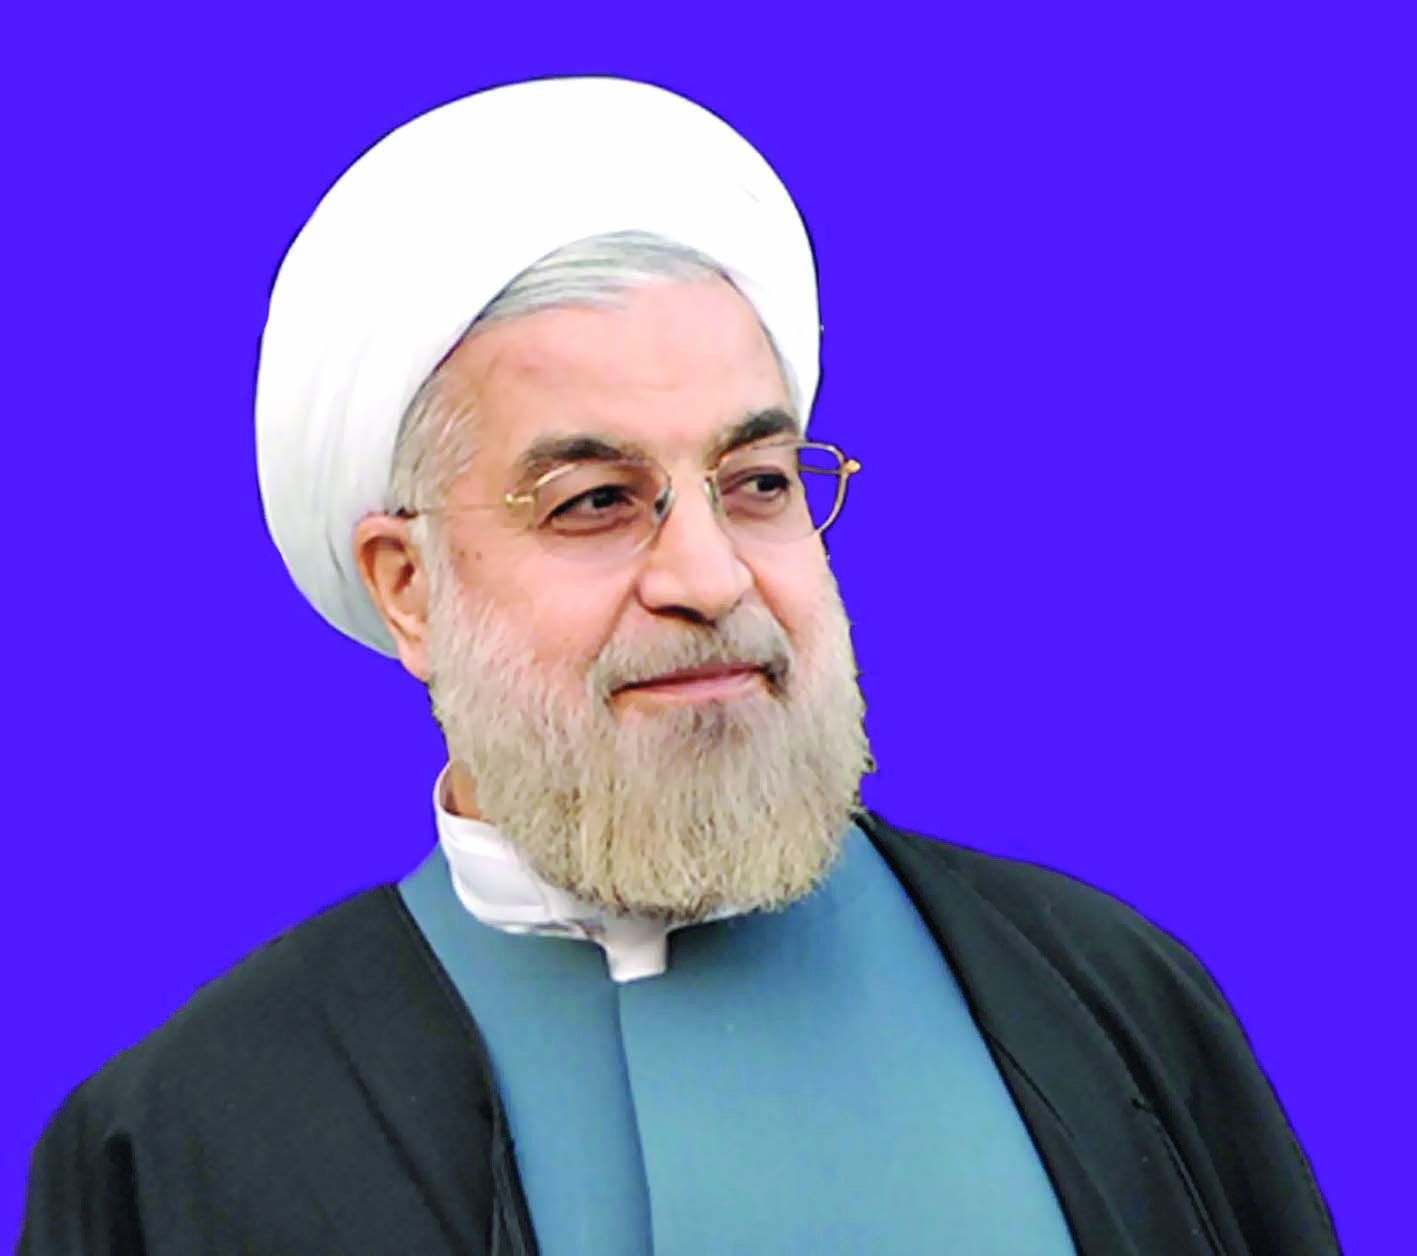 الإيرانيون يفوِّتون عليه الفرصة

هل يتغيّر موقف ترامب 

من إيران بعد فوز روحاني؟